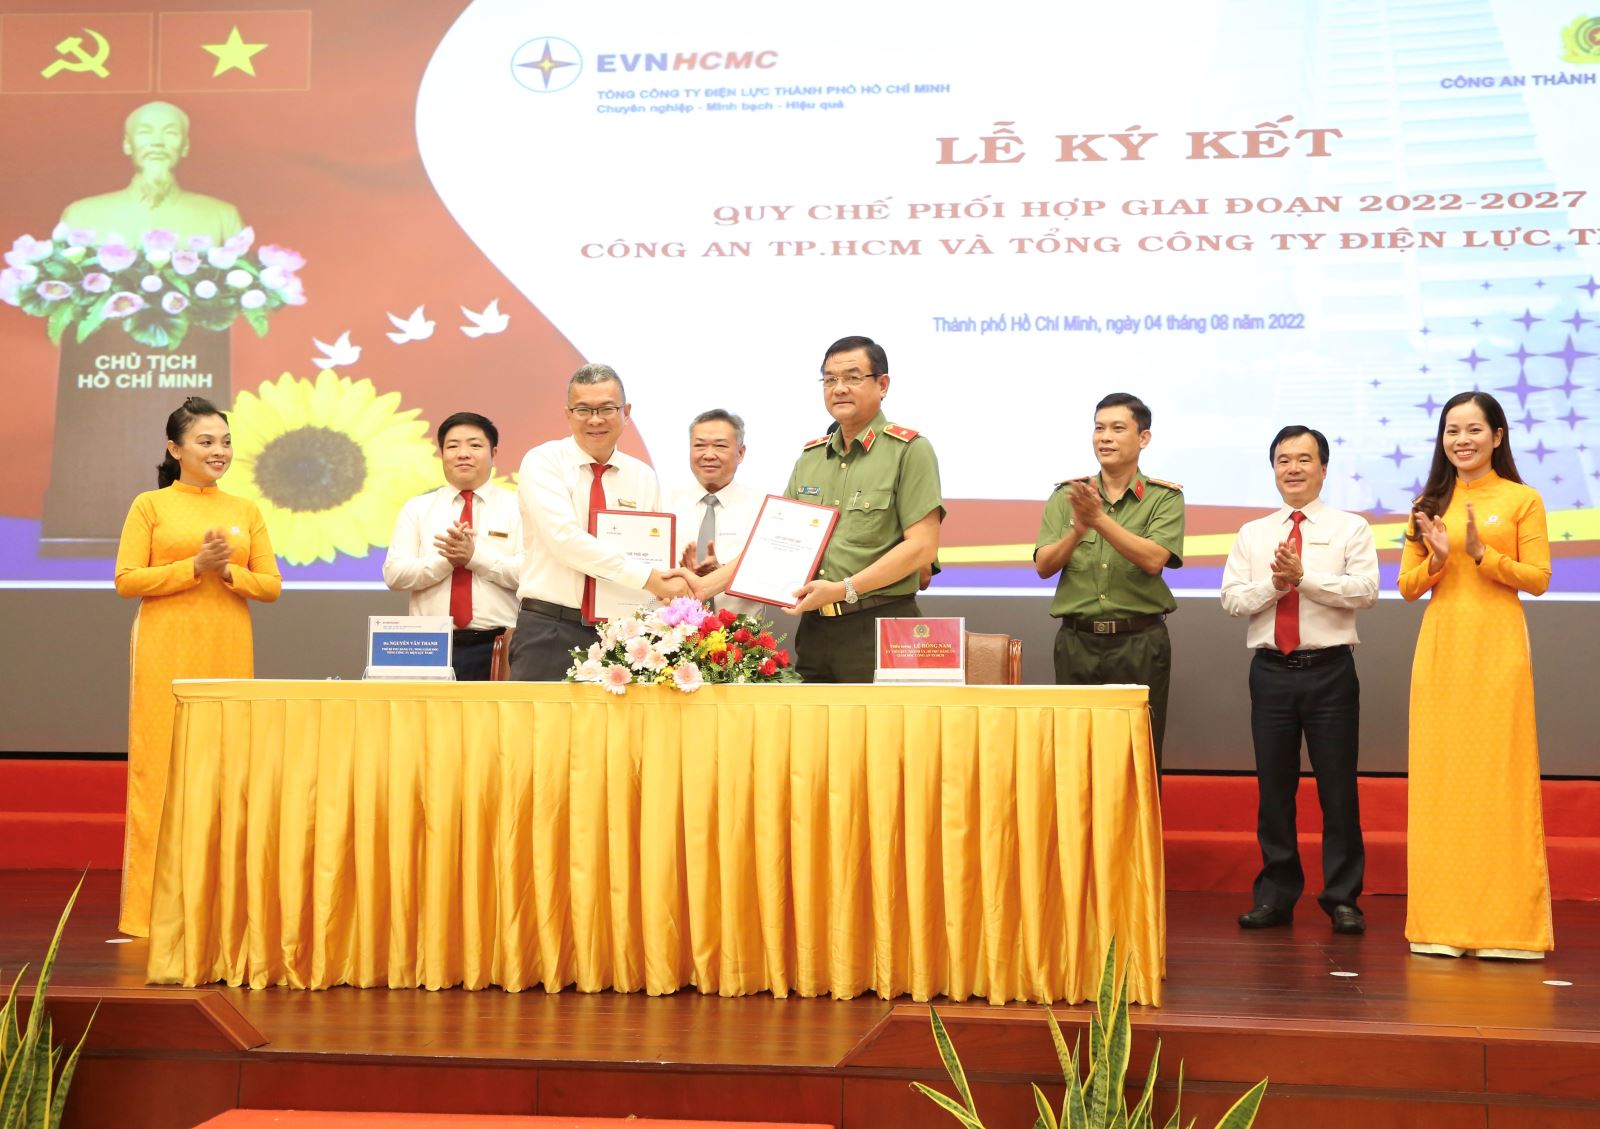 Ông Nguyễn Văn Thanh, Tổng Giám đốc EVNHCMC và Thiếu tướng Lê Hồng Nam, Giám đốc Công an TPHCM ký kết qui chế phối hợp giai doạn 2022-2027.